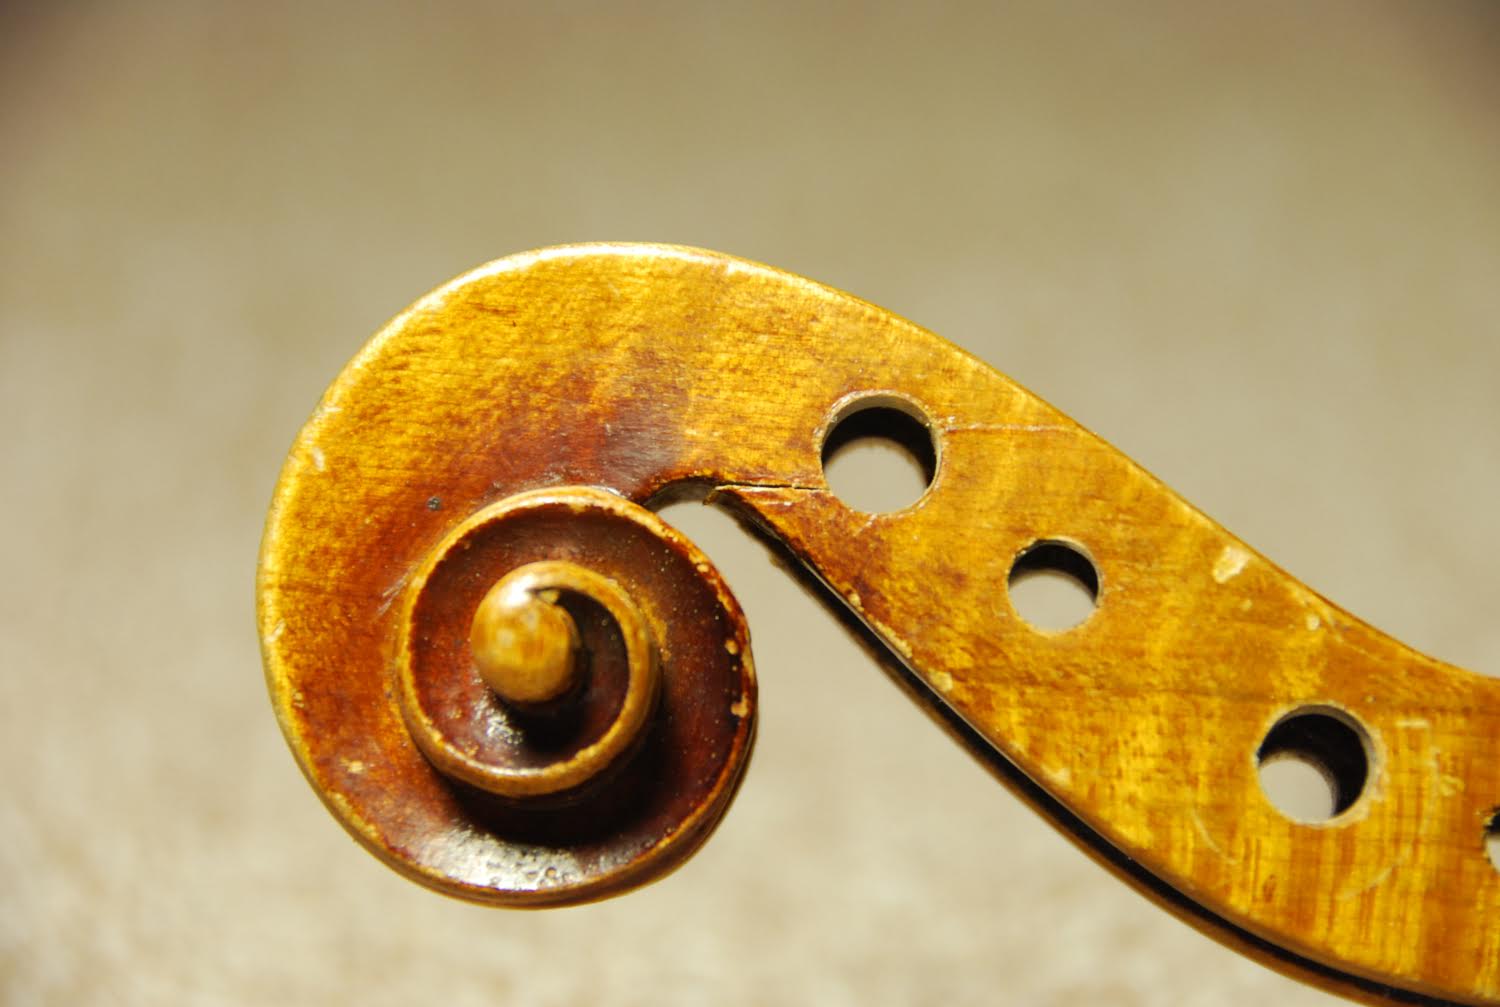 Instrument Repairs & Restoration